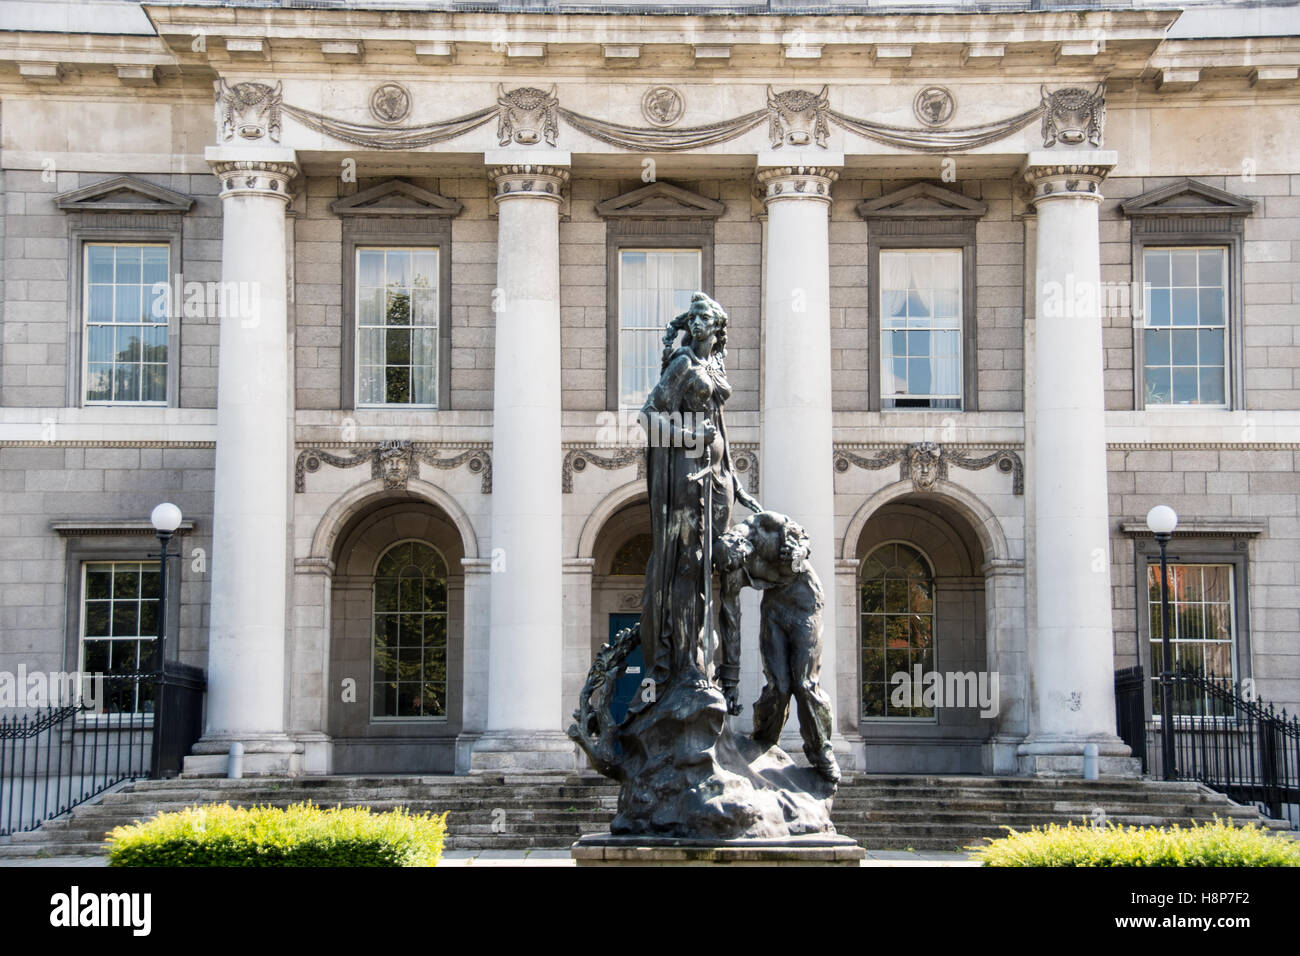 Dublin, Irland - Skulptur außerhalb der Custom House, einem neoklassizistischen 18. Jahrhundert Gebäude in Dublin, Irland. Stockfoto